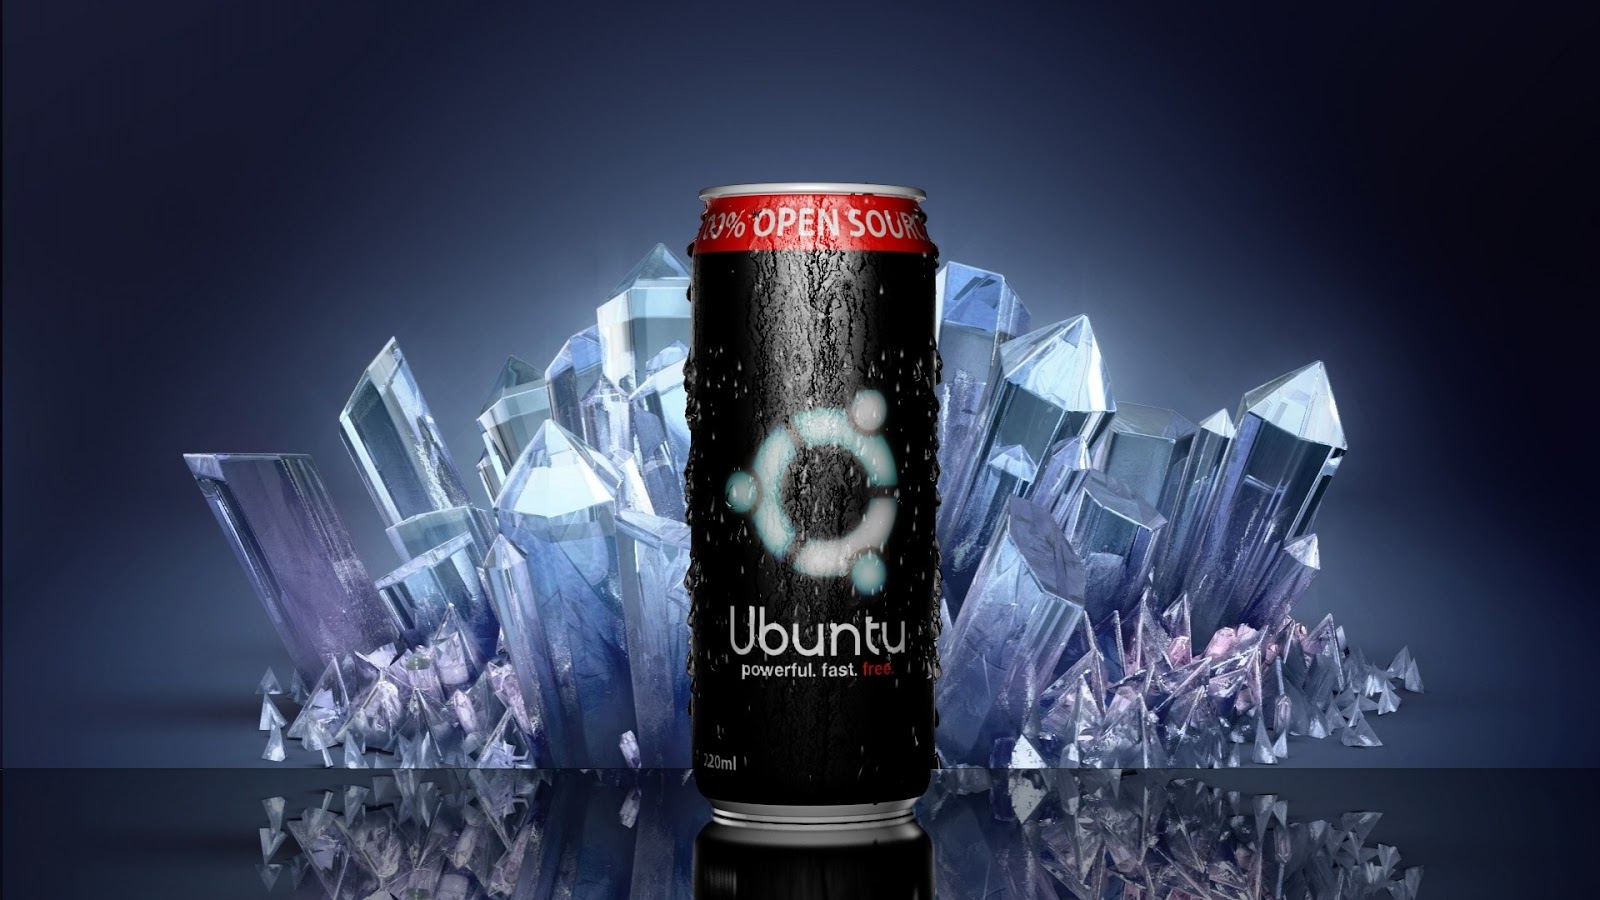 best ubuntu wallpapers,drink,product,energy drink,beverage can,beer